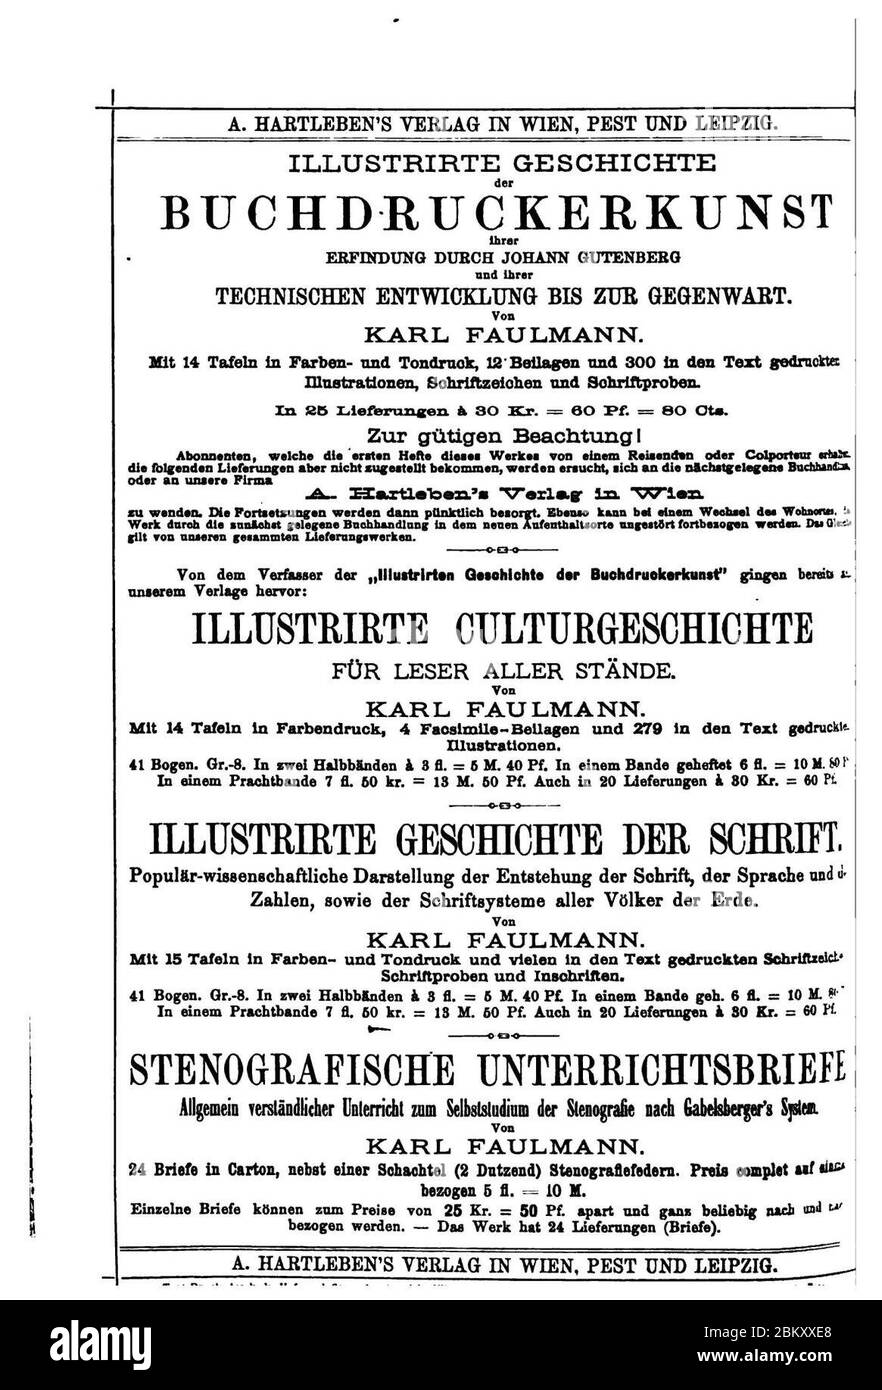 Illustrirte Geschichte der Buchdruckerkunst (Faulmann) 959. Stock Photo